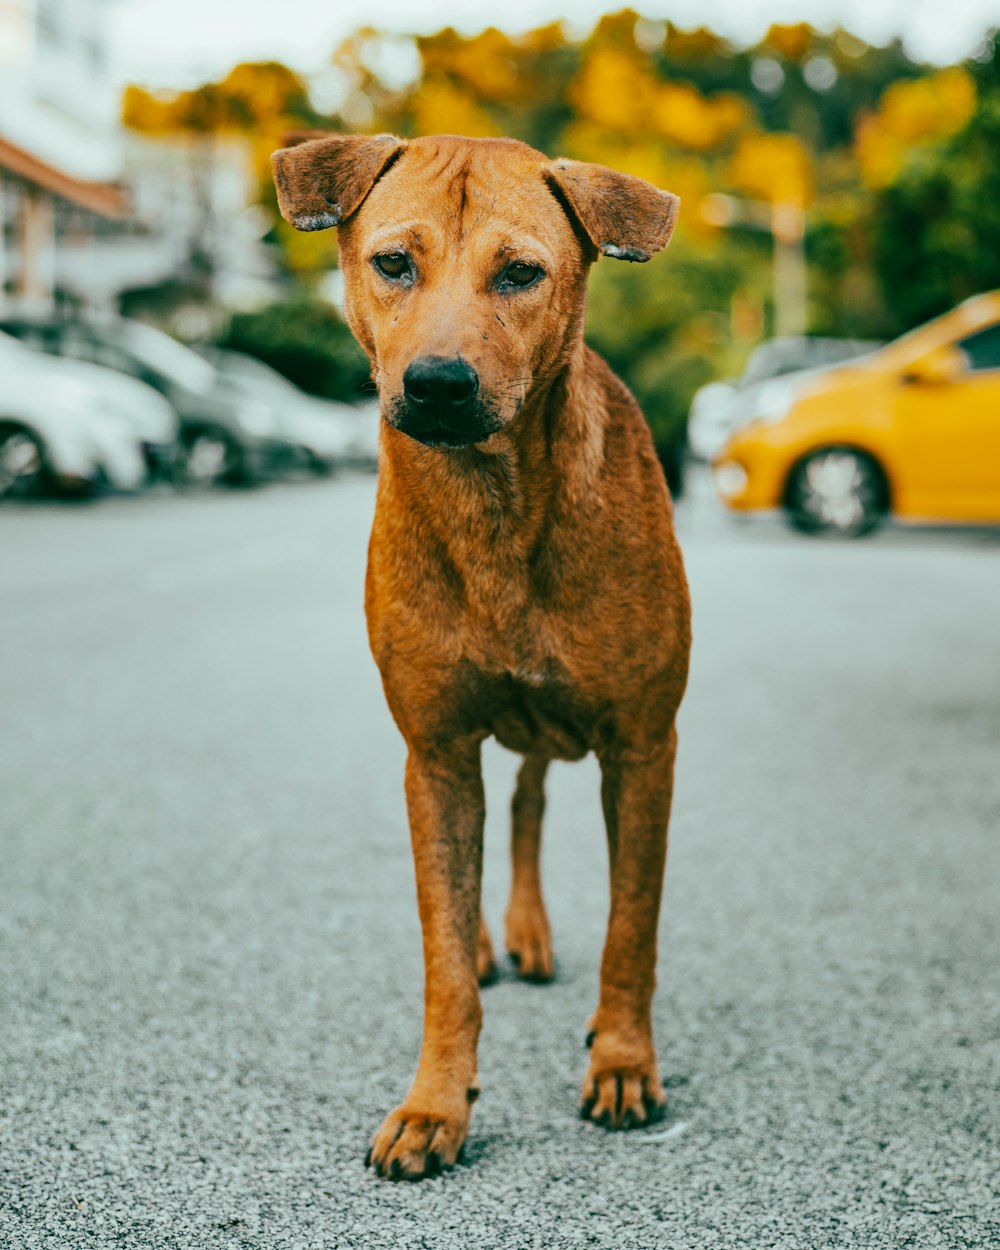 cane a pelo corto marrone sulla strada asfaltata grigia durante il giorno